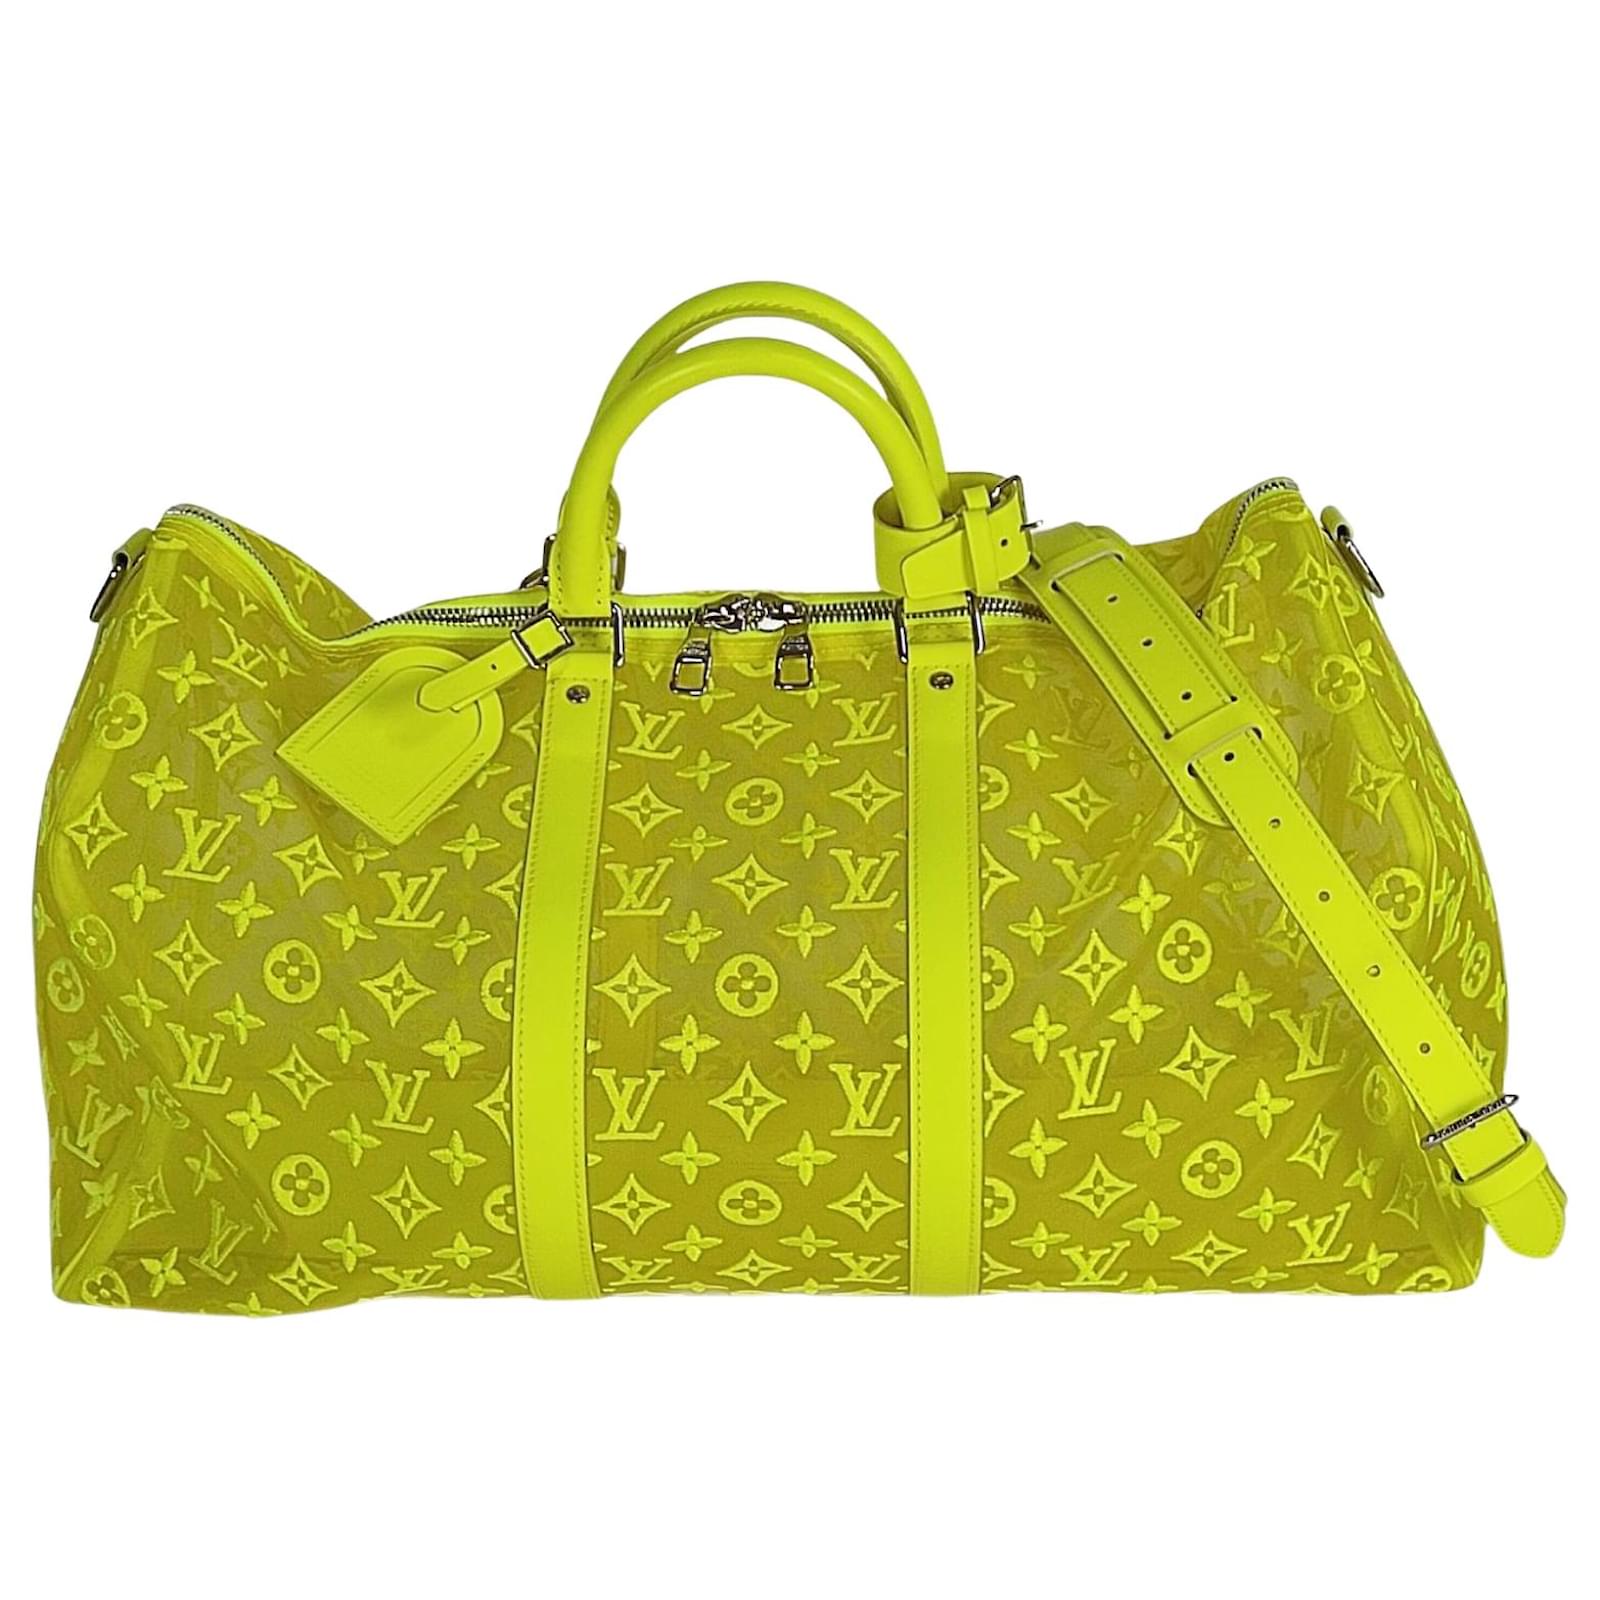 Keepall cloth travel bag Louis Vuitton Brown in Cloth - 31023263